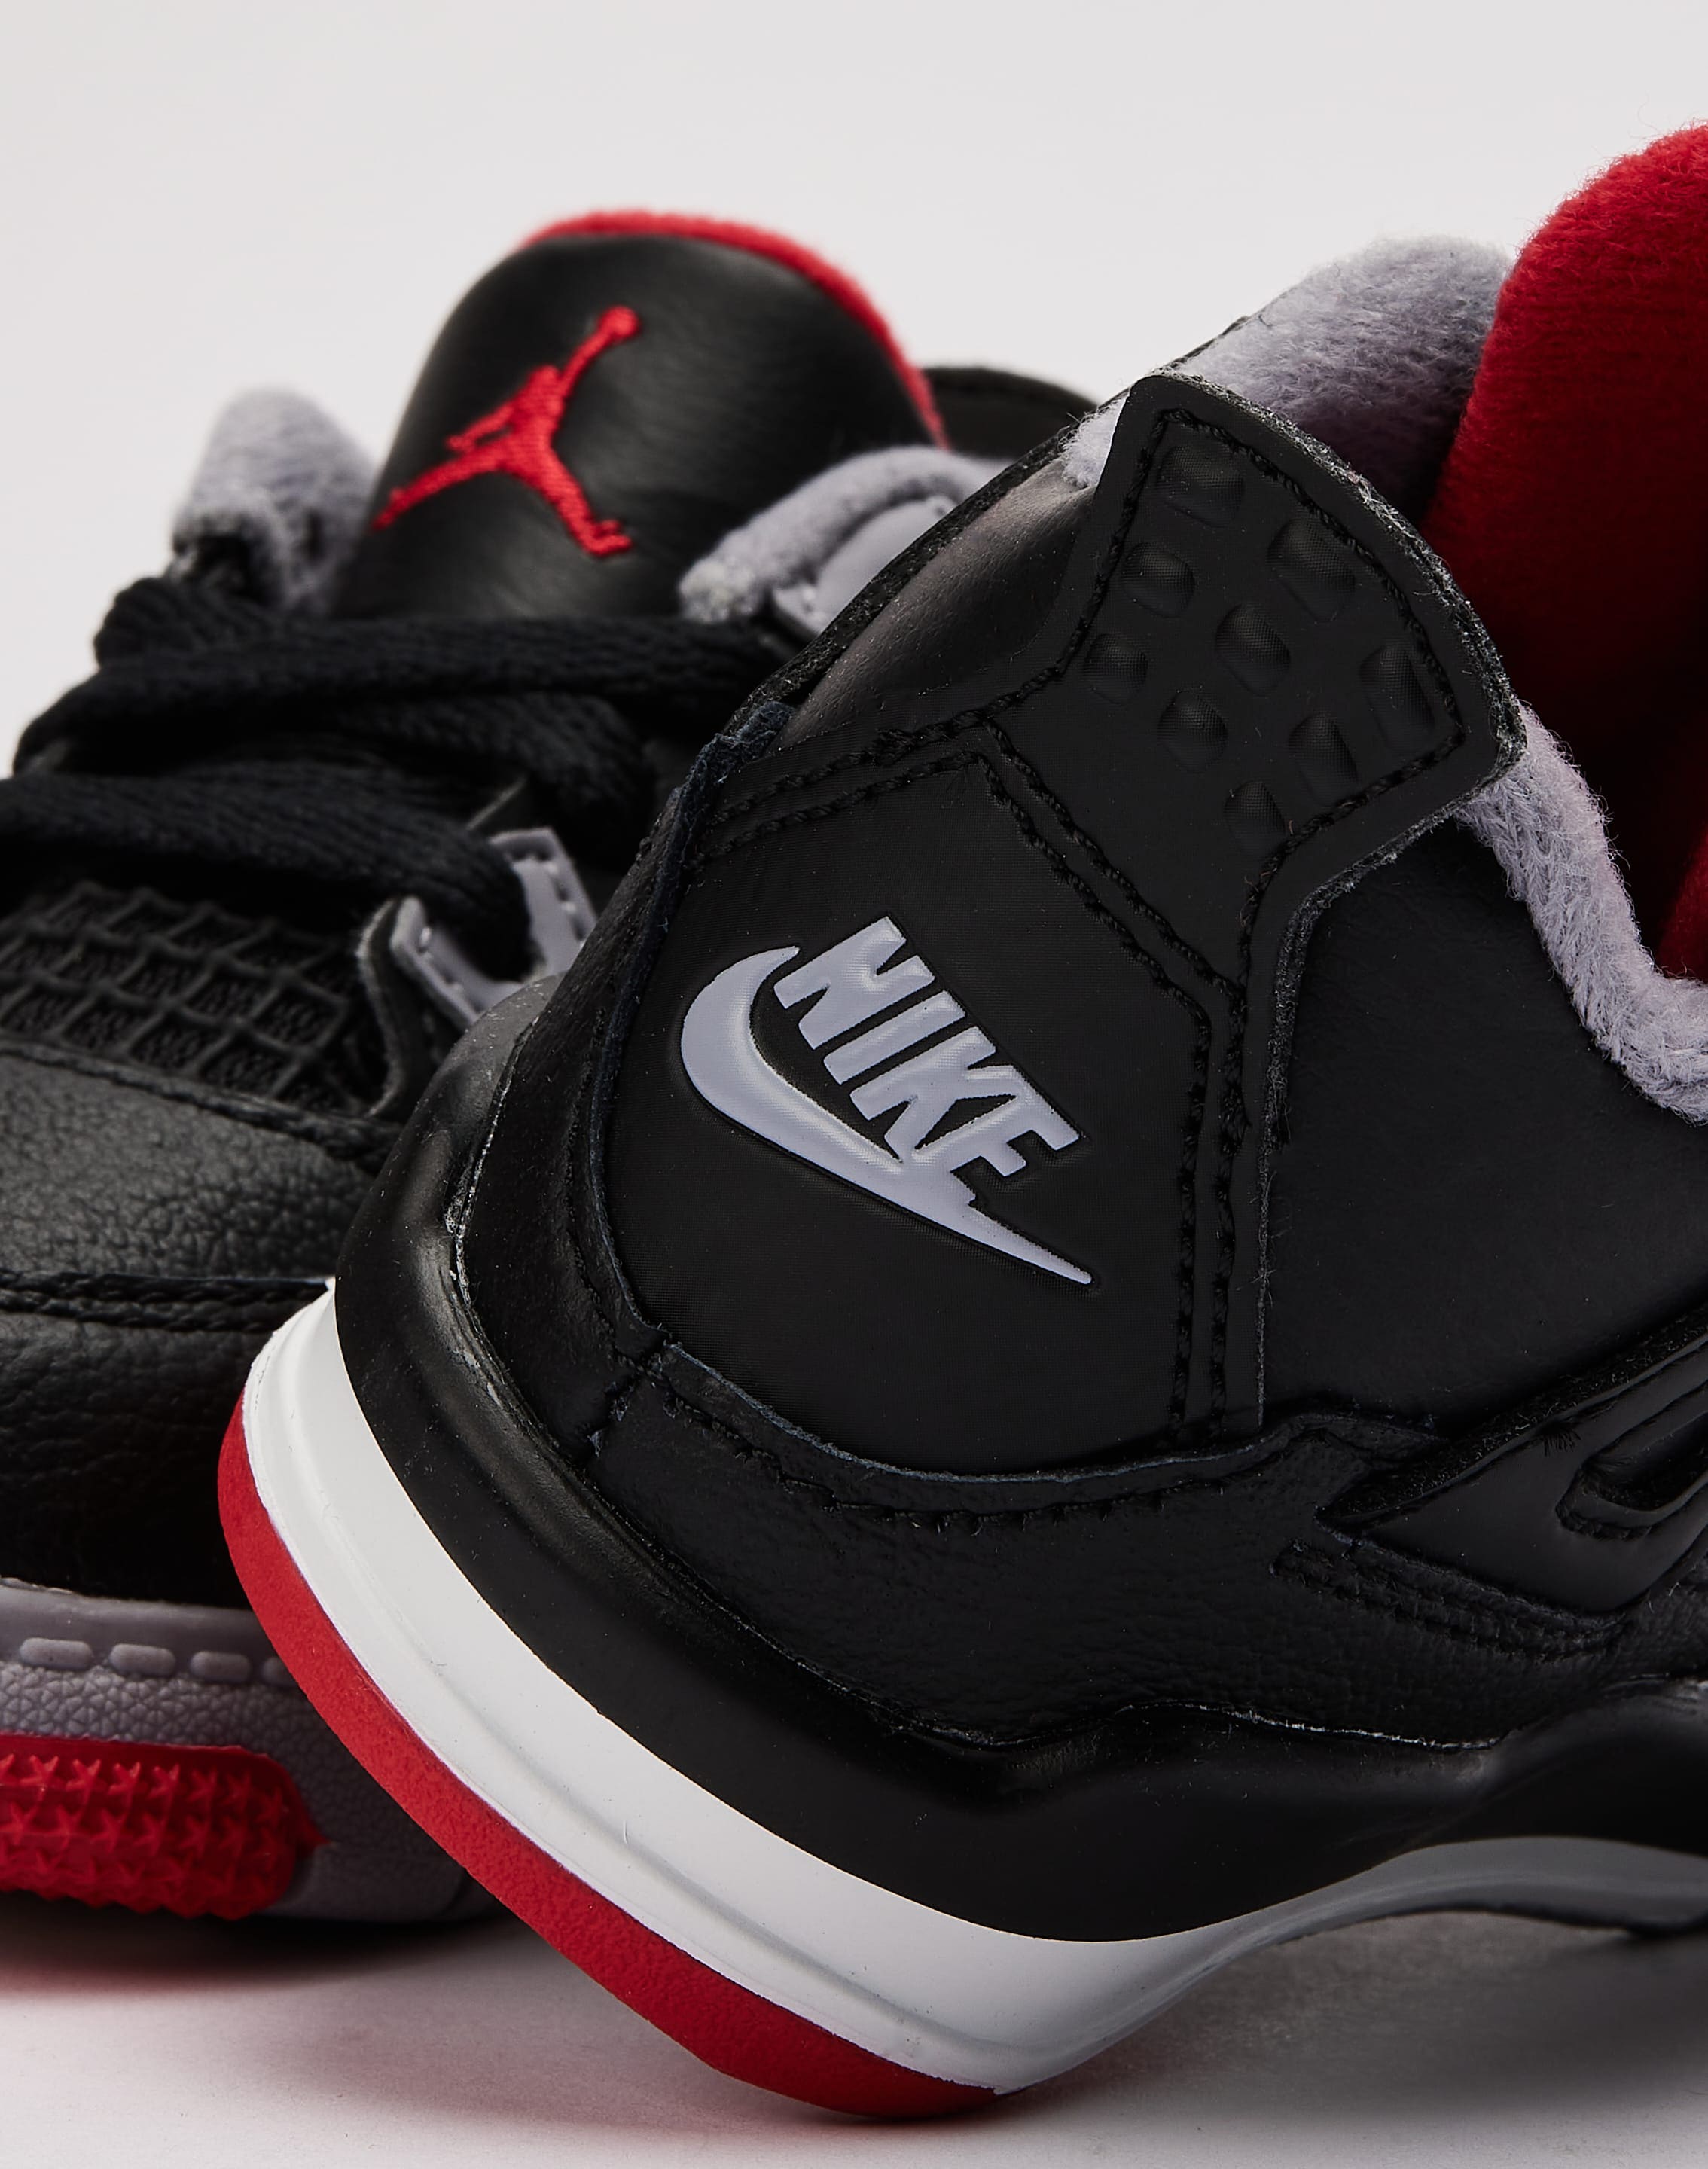 Jordan Air Jordan 4 Retro 'Red Cement’ Toddler